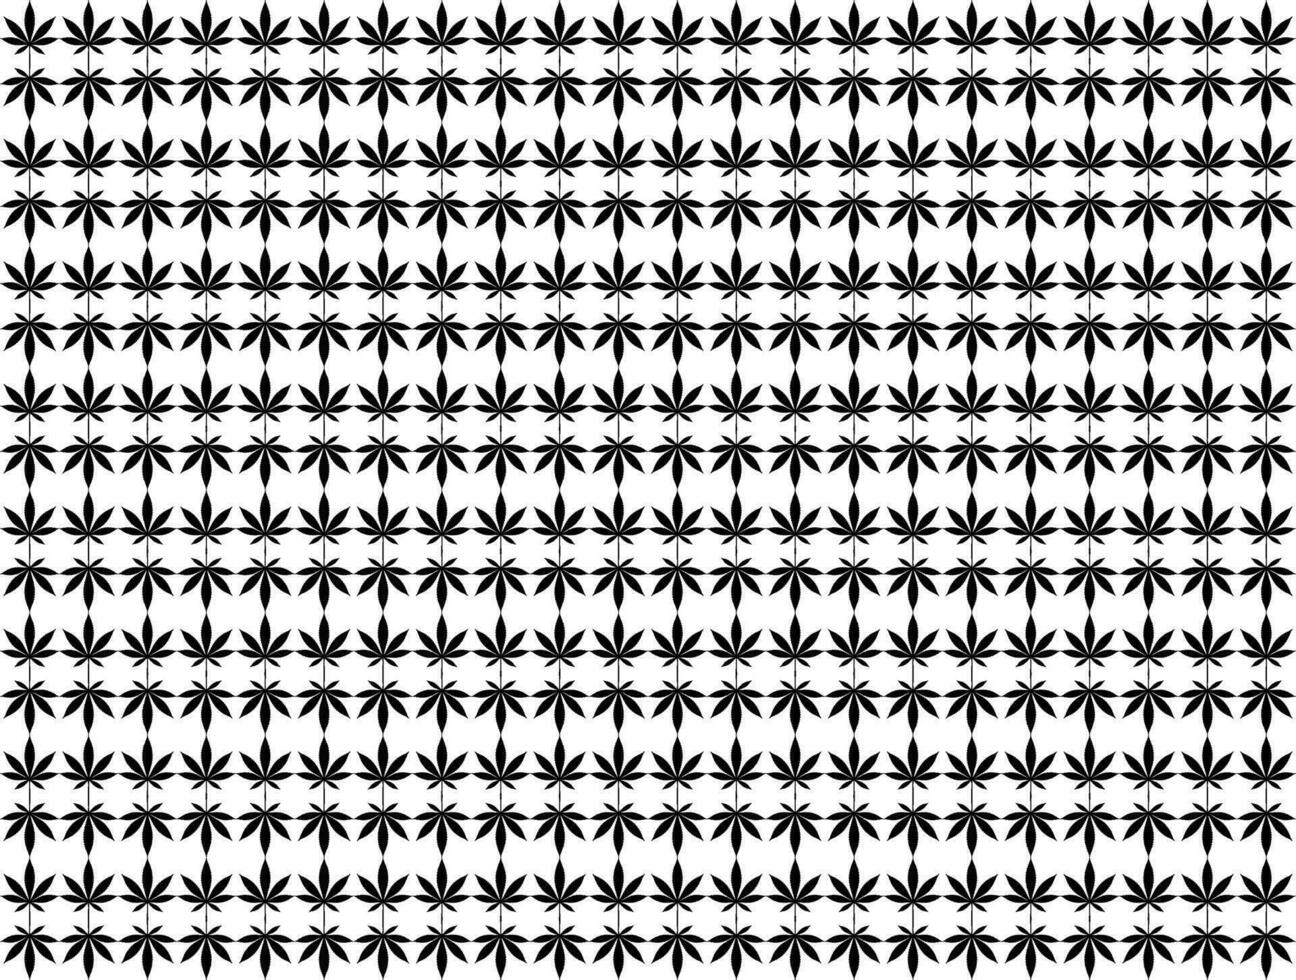 cannabis aussi connu comme marijuana feuille silhouette motifs modèle, pouvez utilisation pour décoration, orné, fond d'écran, toile de fond, textile. mode, tissu, tuile, sol, couverture, emballage, etc. vecteur illustration